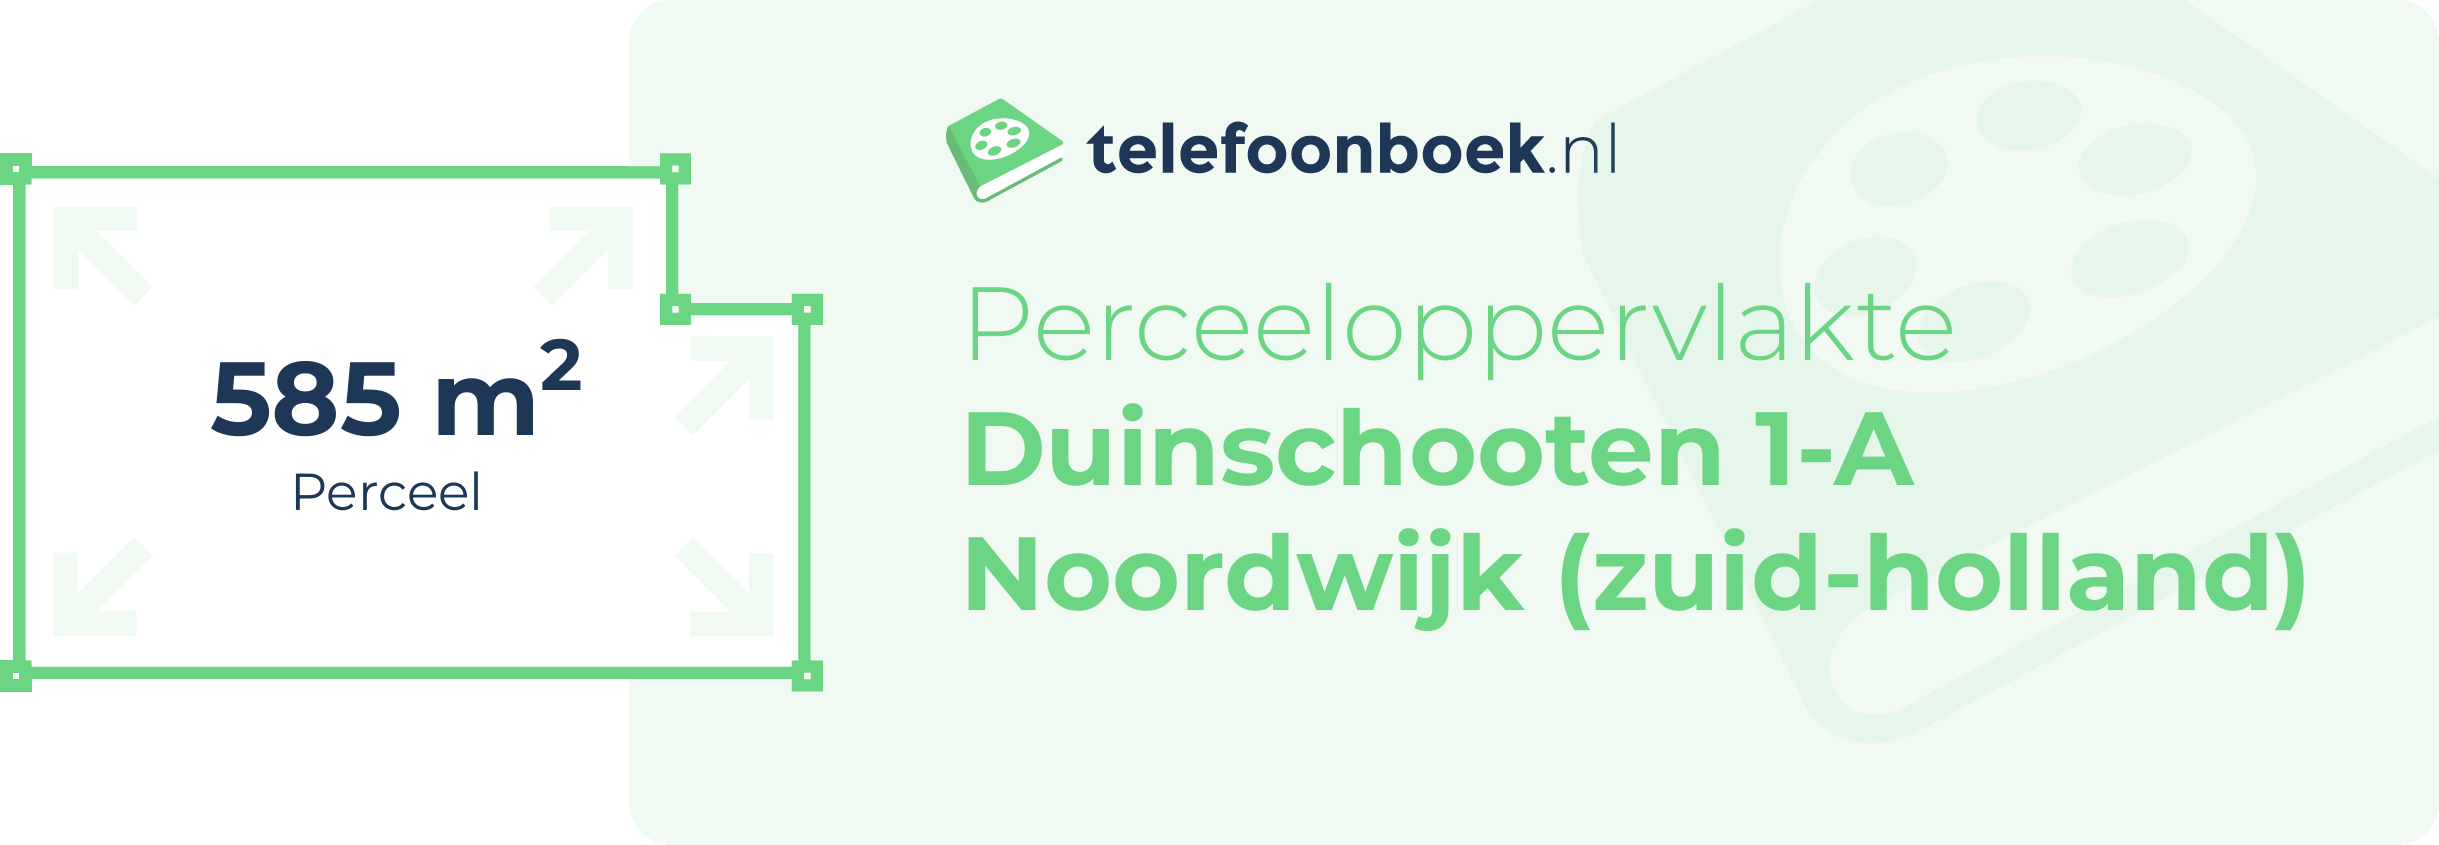 Perceeloppervlakte Duinschooten 1-A Noordwijk (Zuid-Holland)